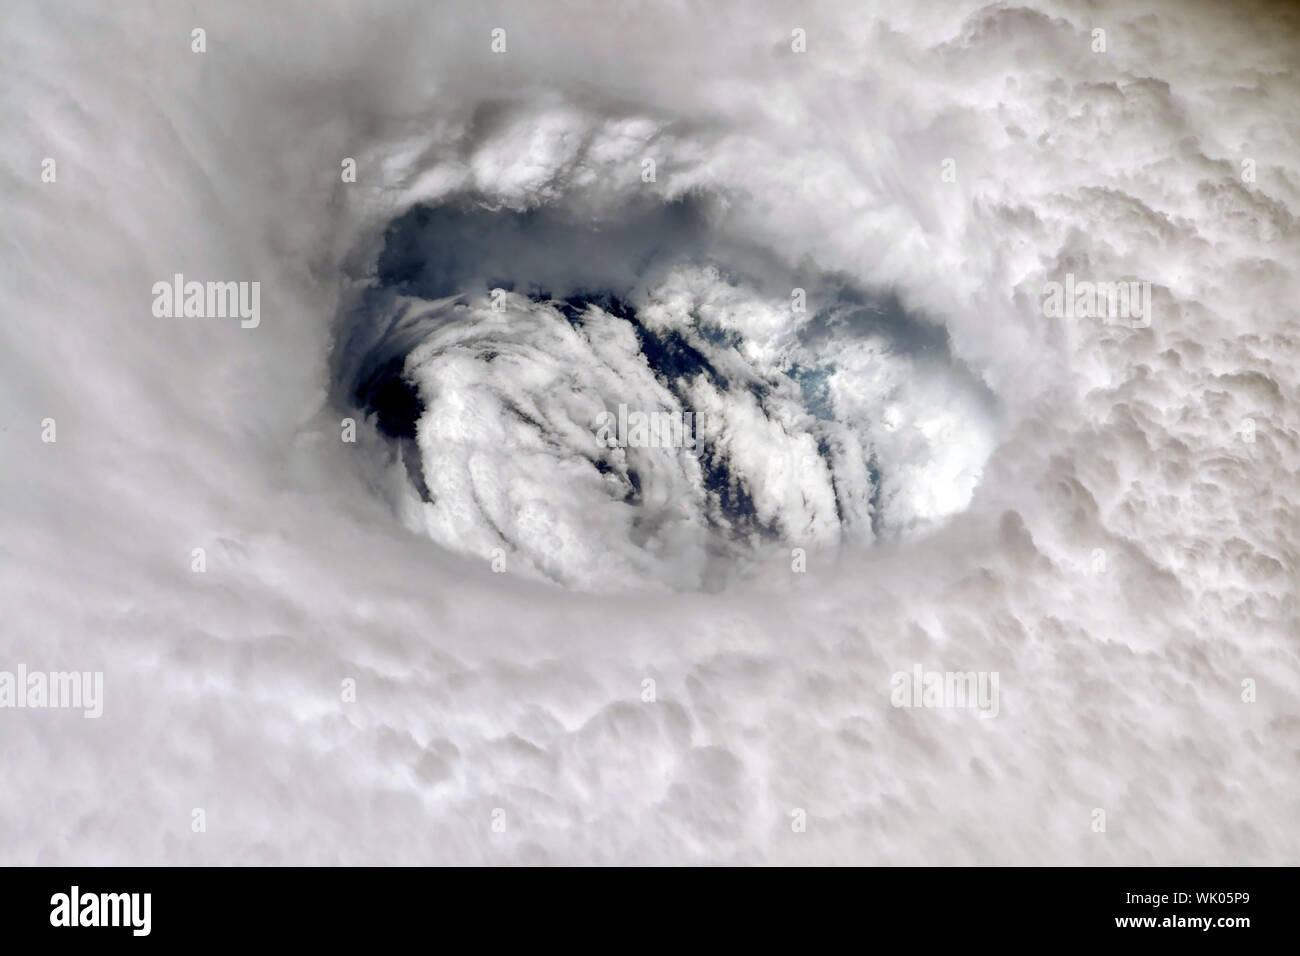 La NASA La Station spatiale internationale (ISS) vue de l'œil de l'Ouragan Dorian photographié par l'astronaute Nick Haye le 2 septembre 2019. Banque D'Images